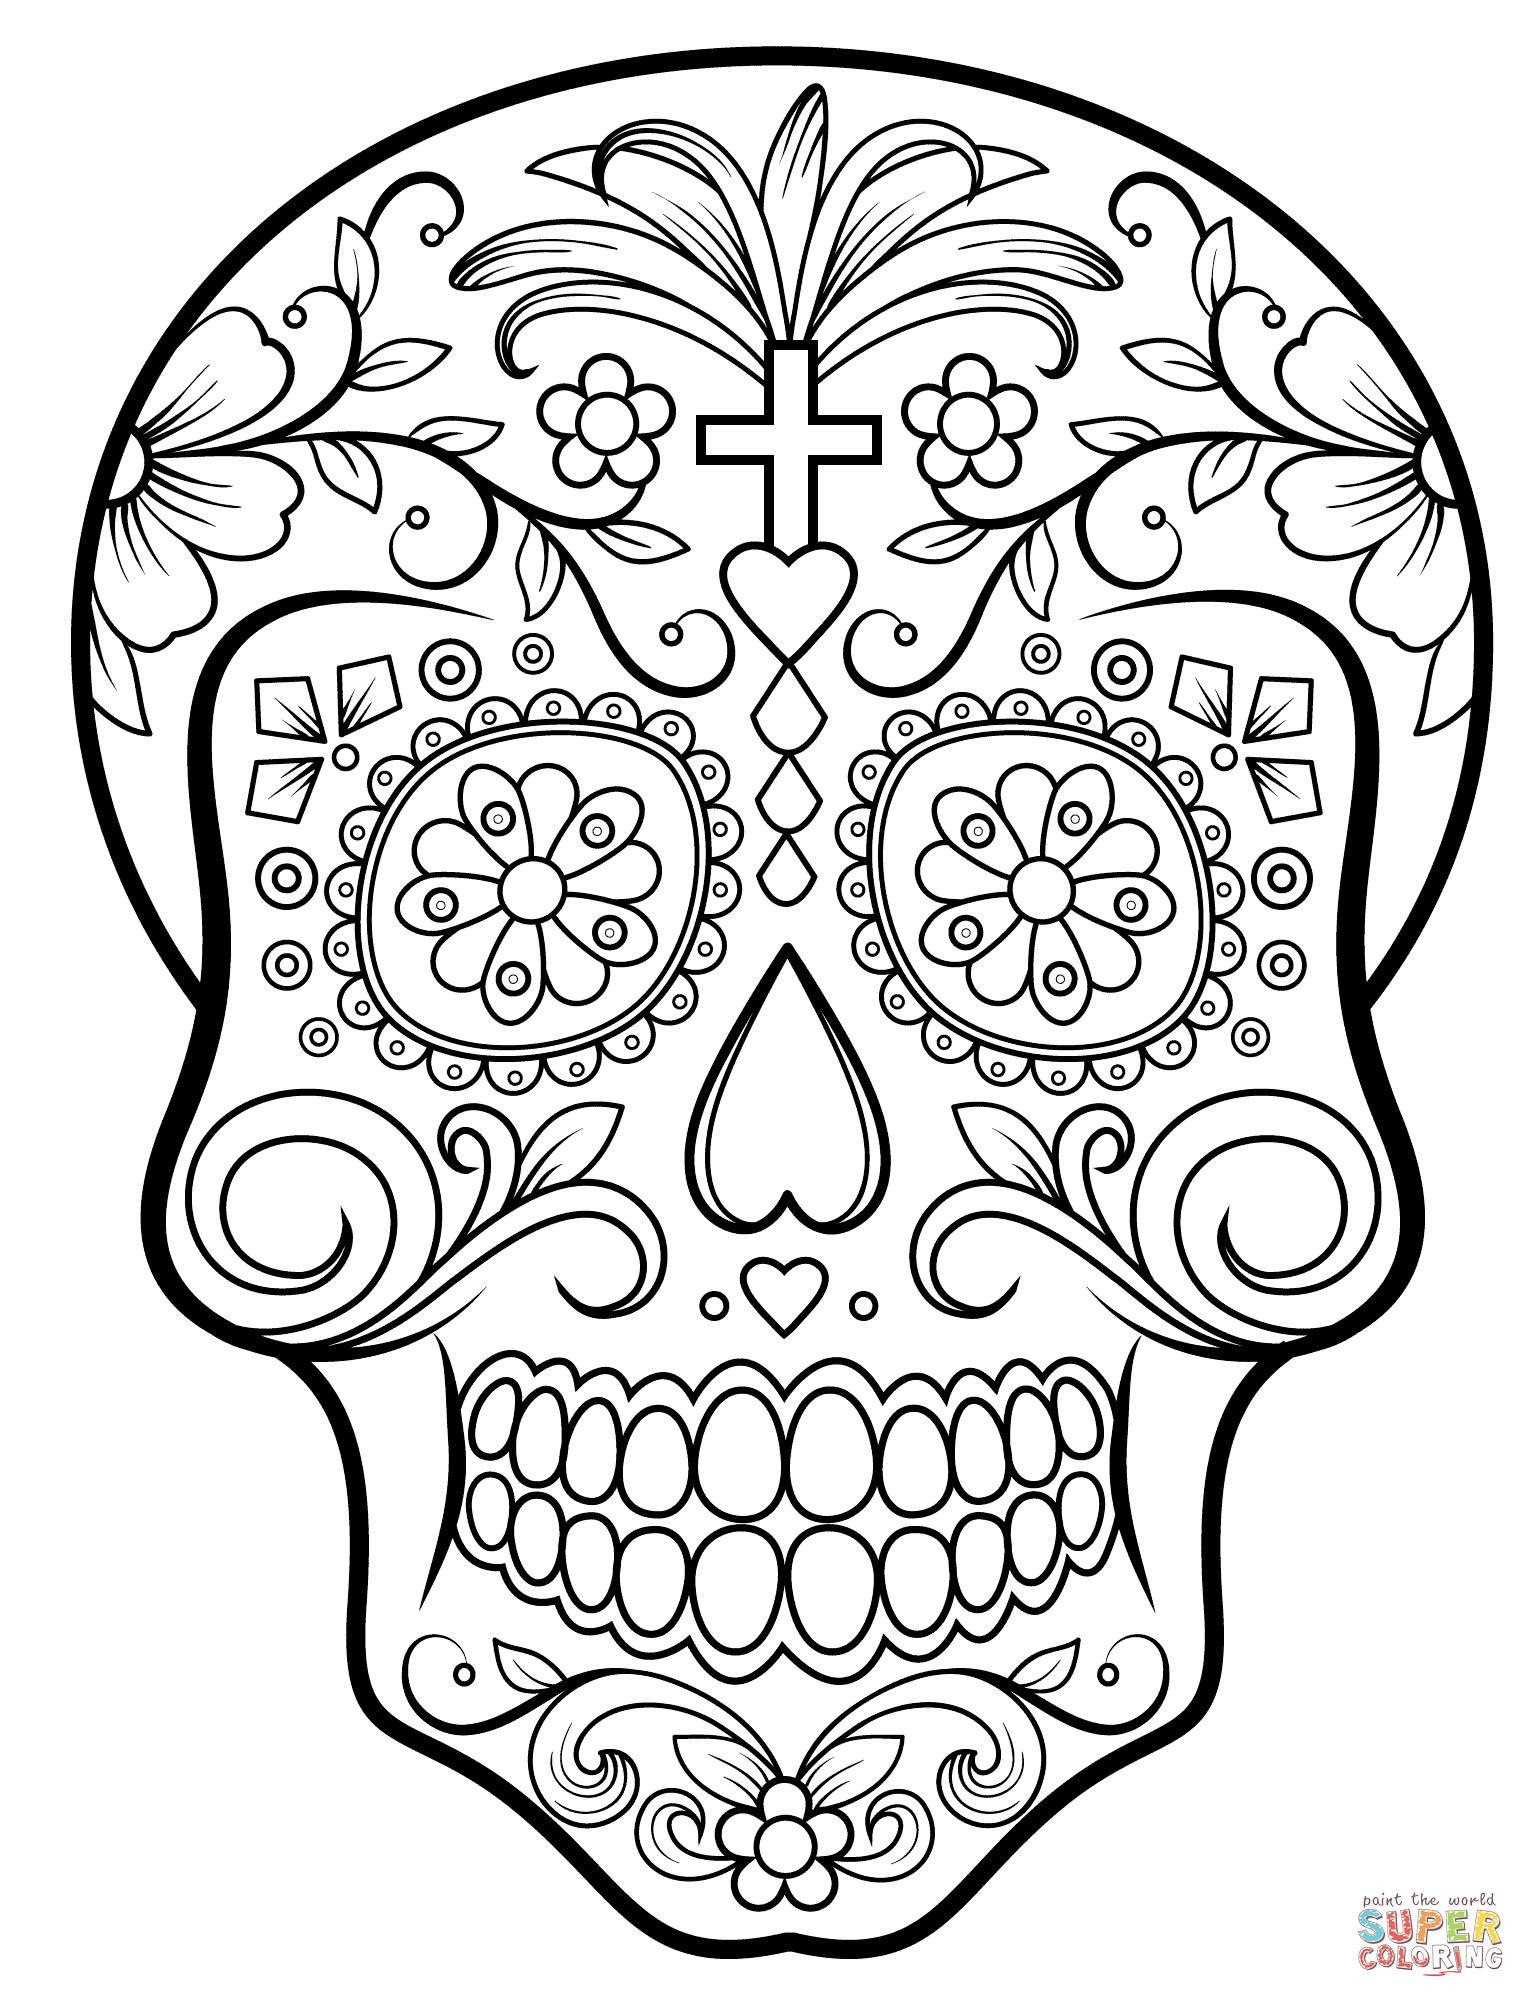 Sugar Skull Coloring Sheet
 Sugar Skull Coloring Pages Bestofcoloring